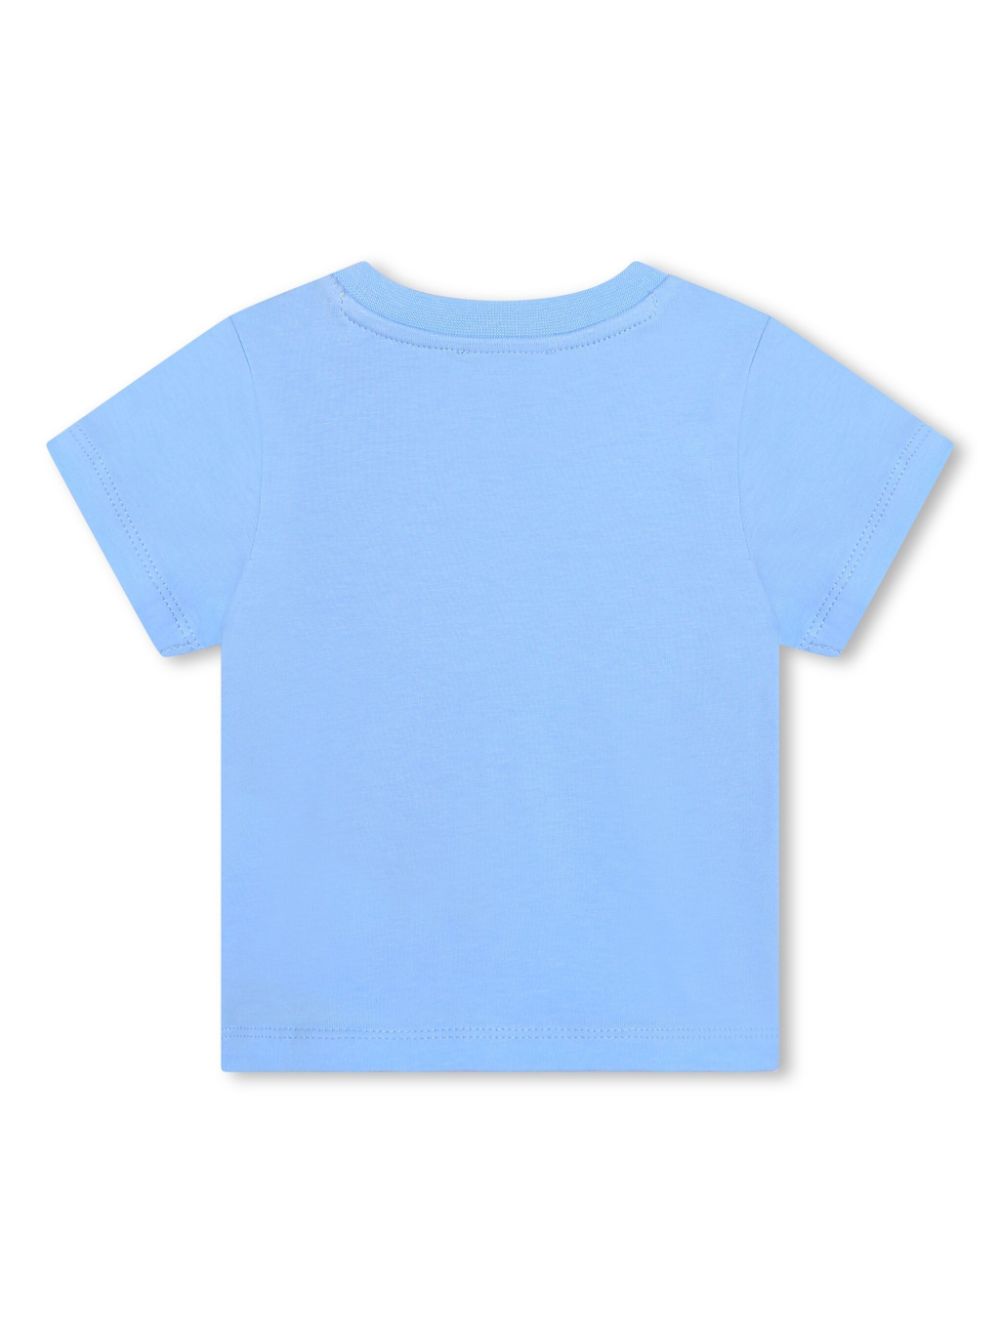 T-shirt bébé bleu poudré